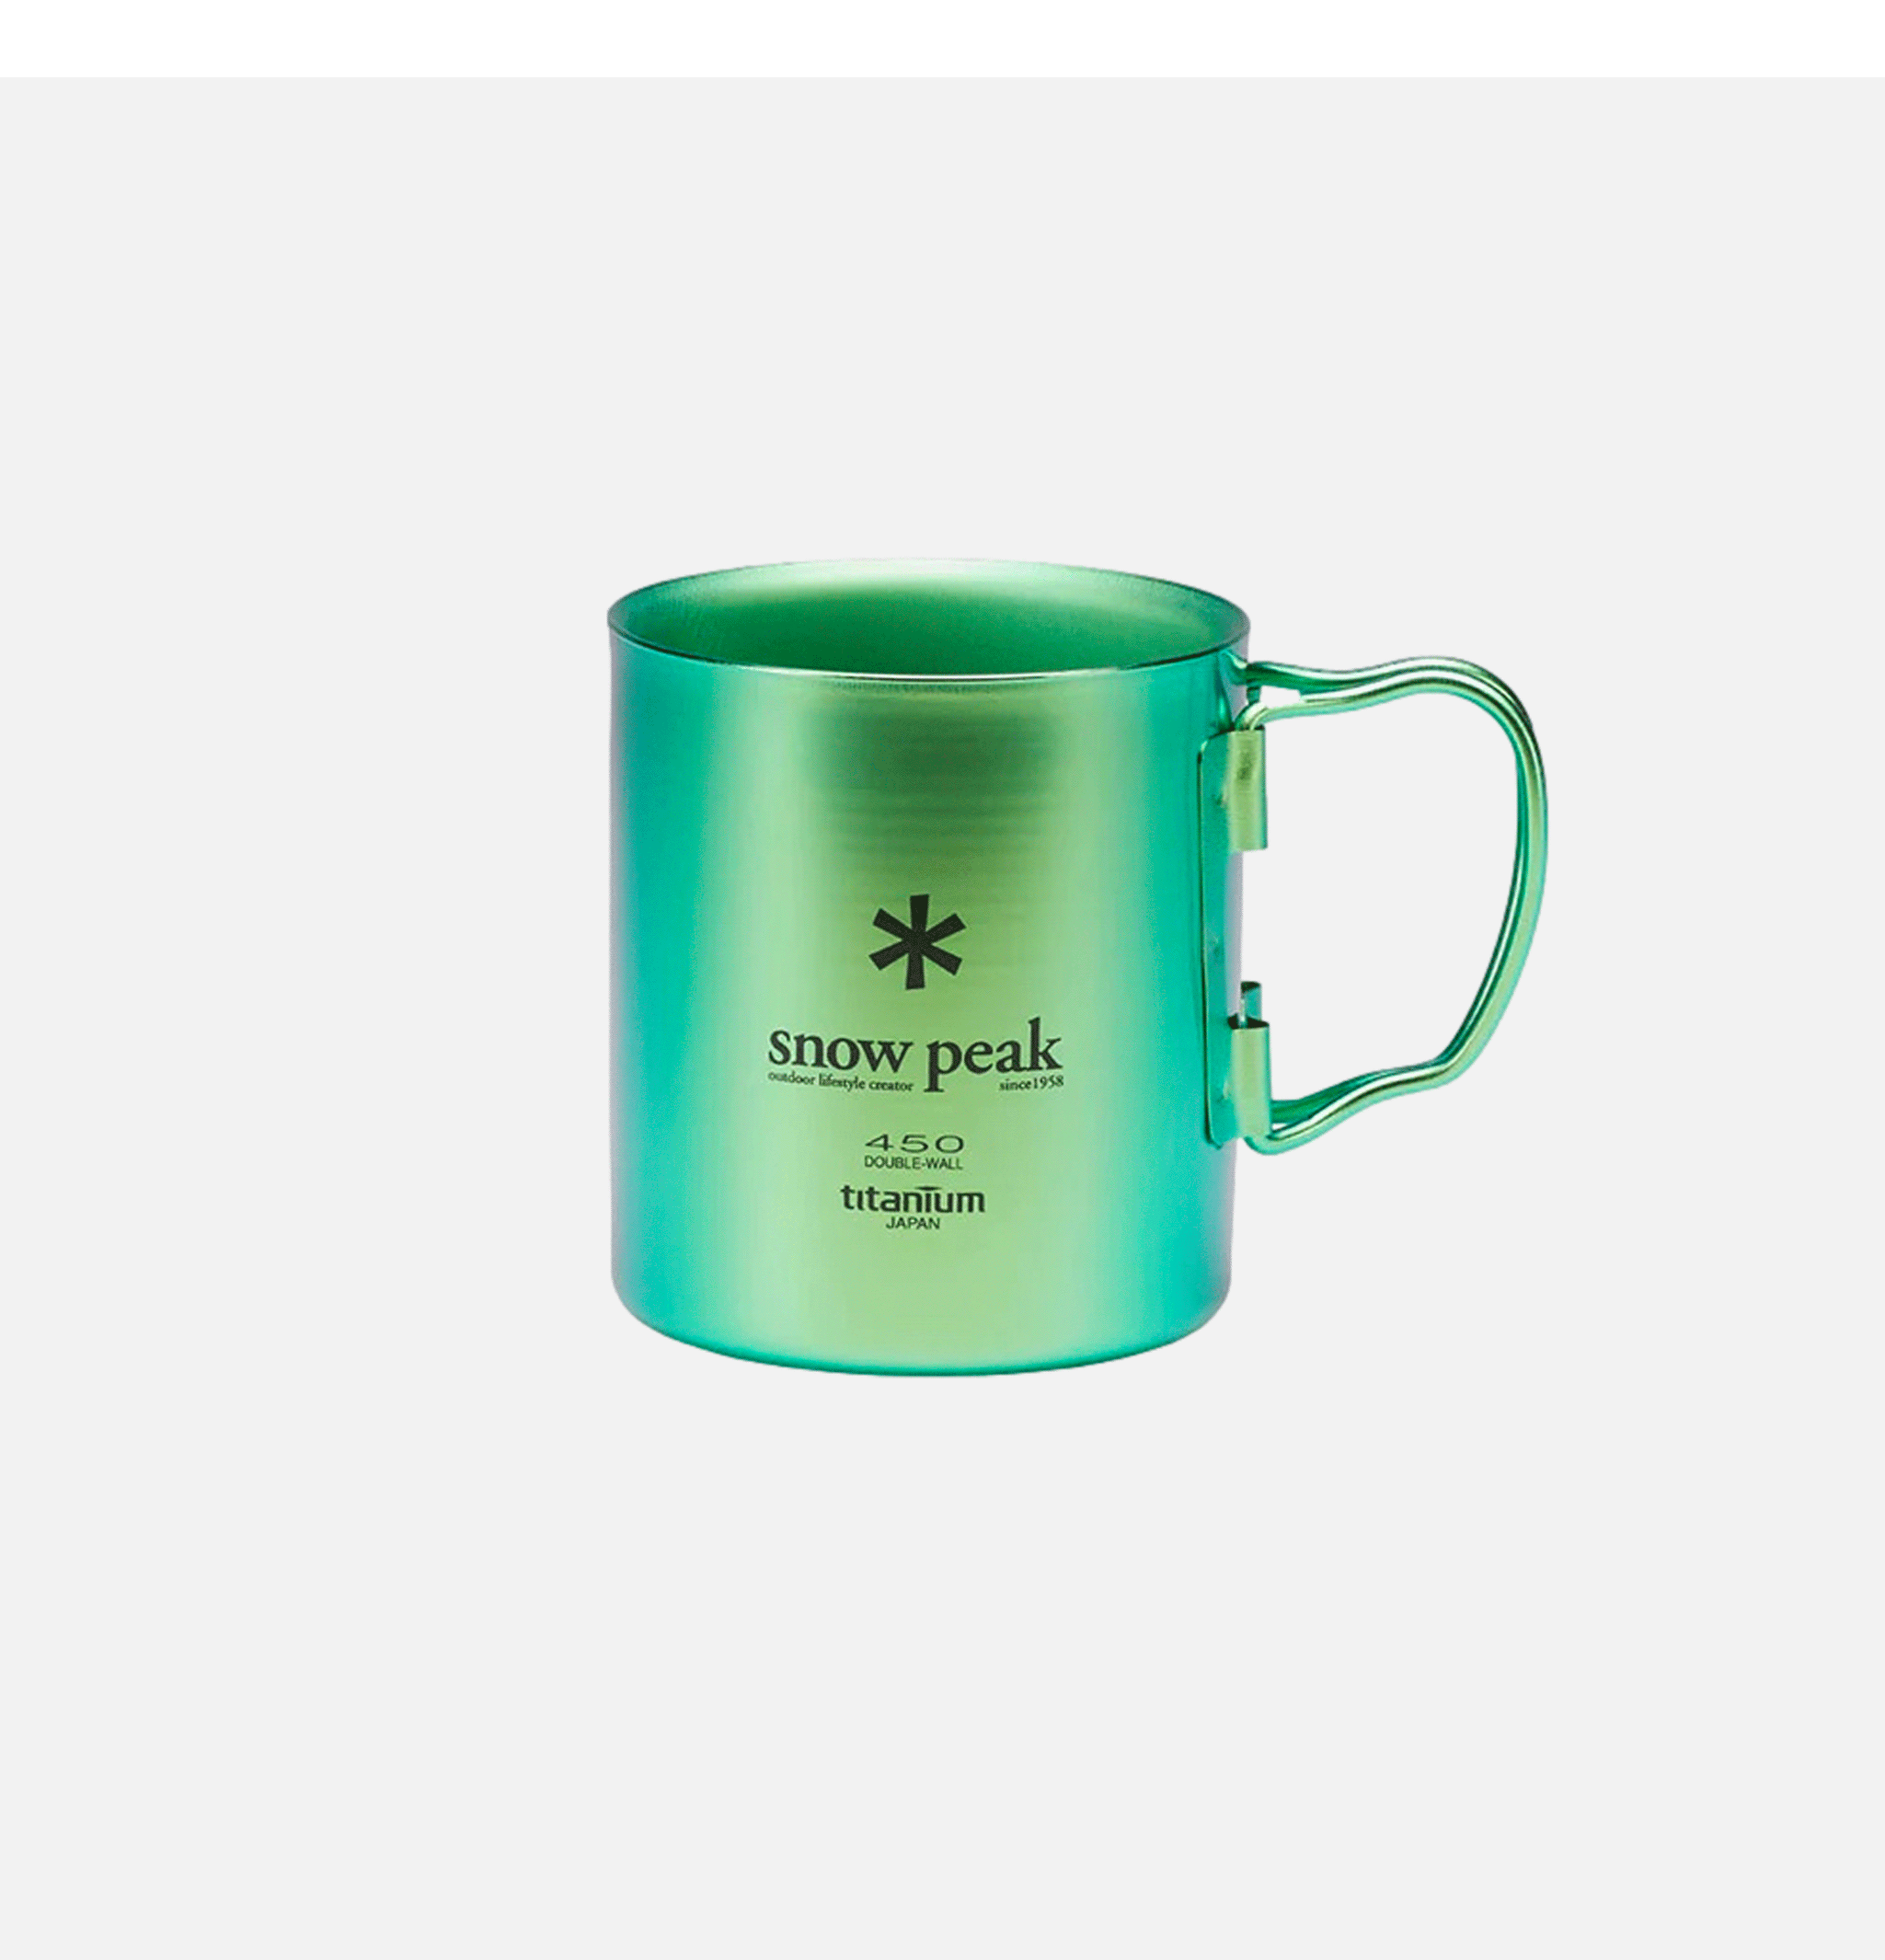 Snow Peak Titanium Single Cup 450 Green